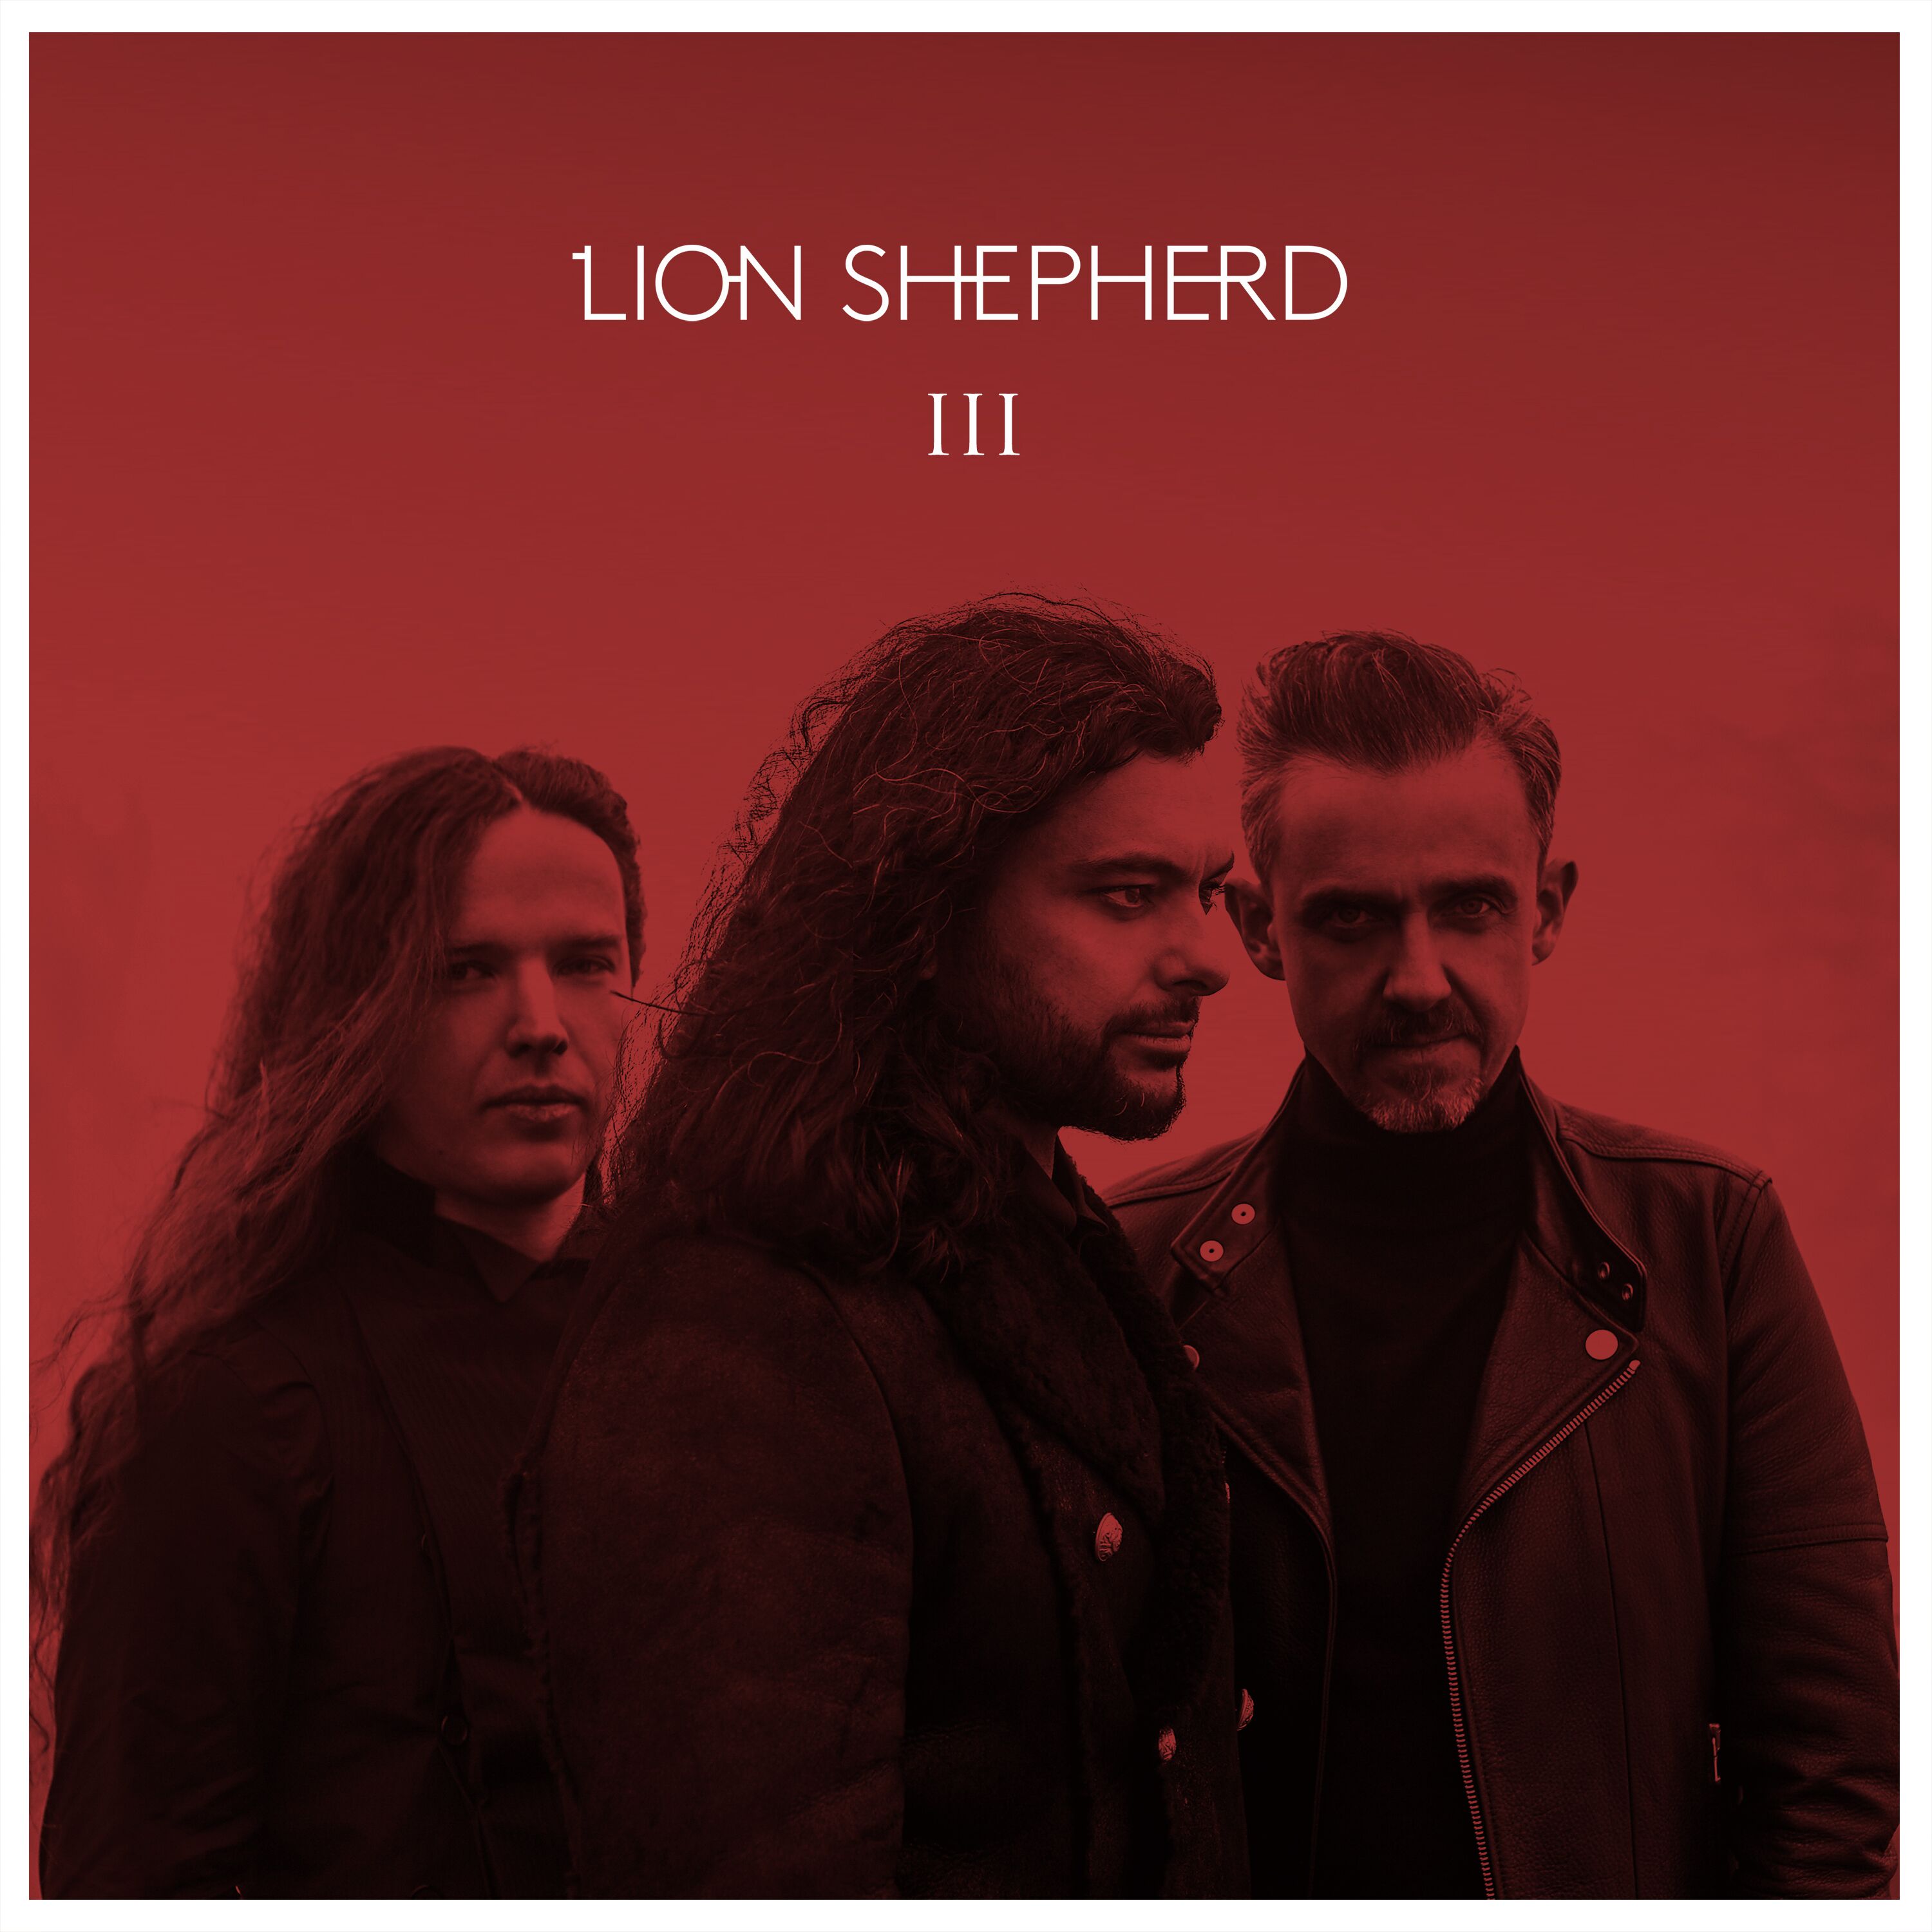 Lion Shepherd: koncerty i pre-order nowej płyty